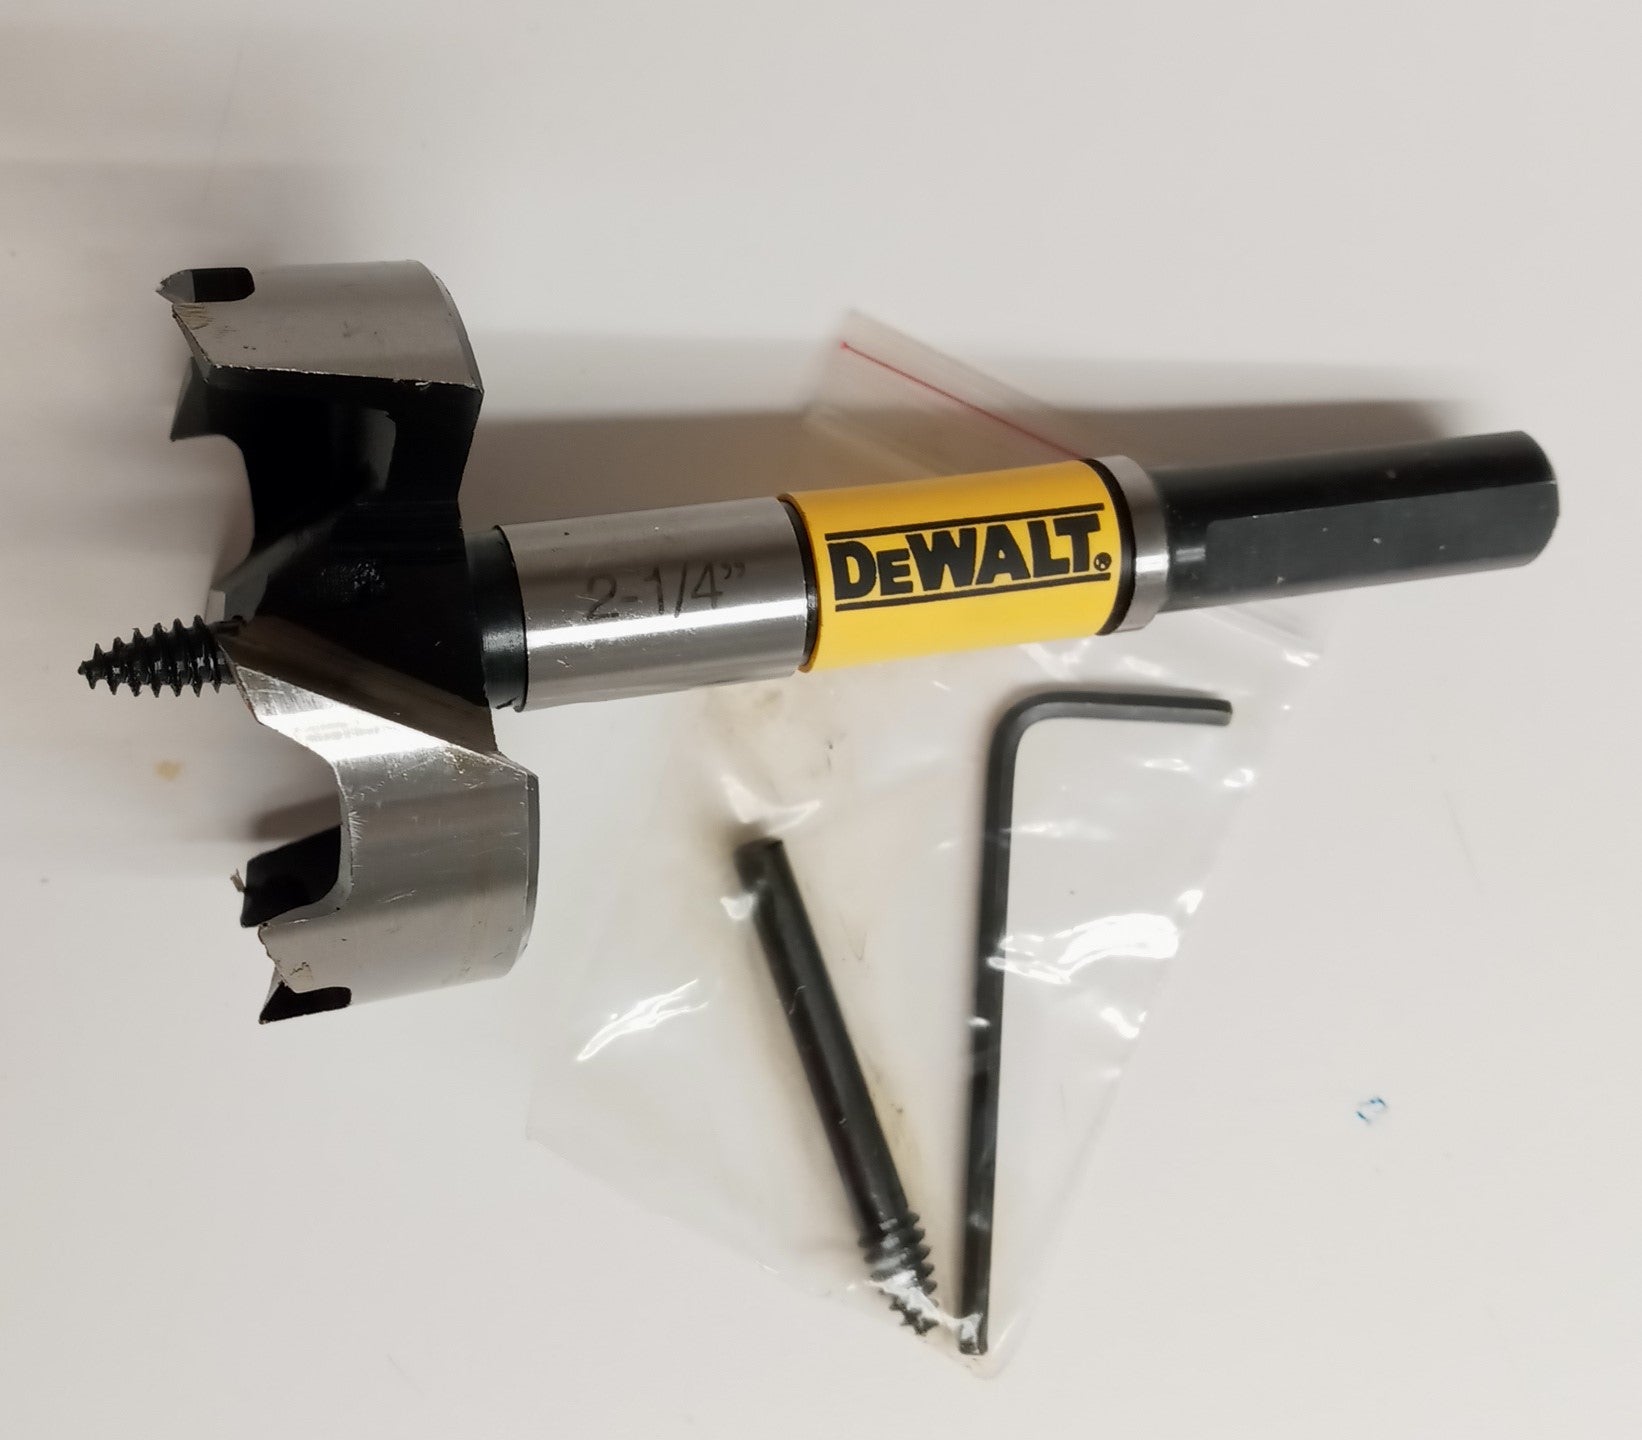 Dewalt DW1638 2-1/4" Self-Feed Wood Drill Bit